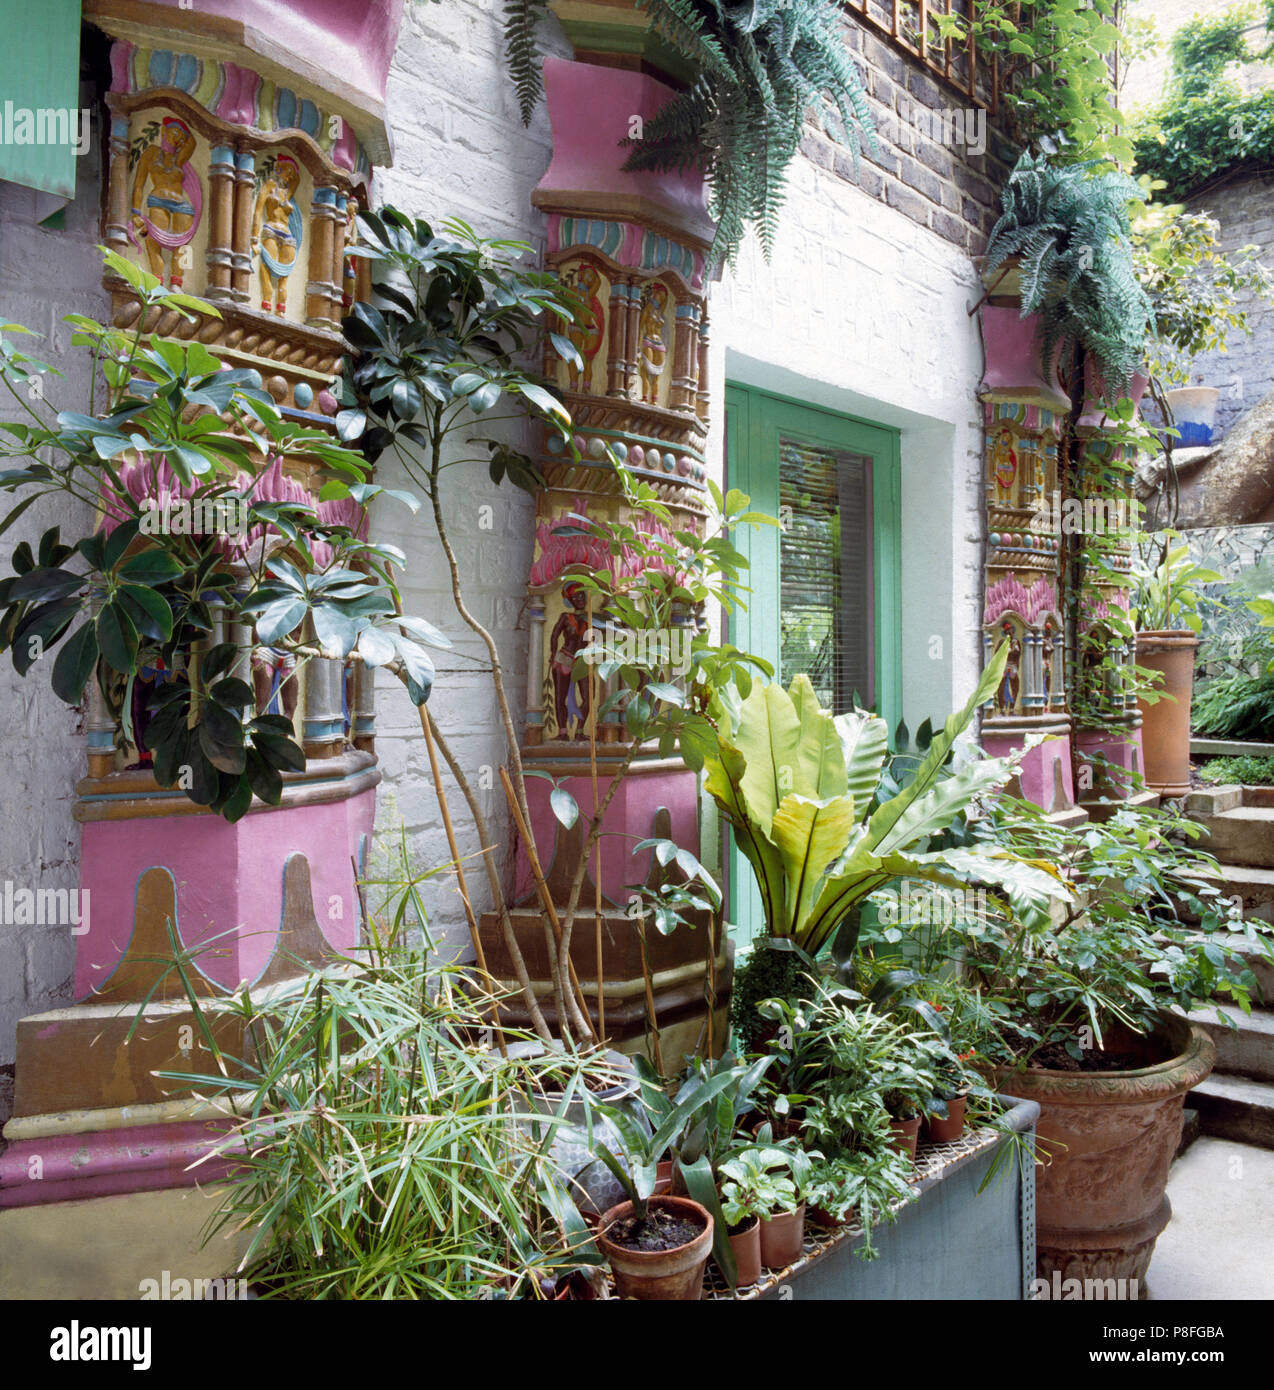 Fassade eines Hauses in der indischen Stil mit grünen Pflanzen in pflanzmaschinen an den Wänden und auf dem Boden Stockfoto